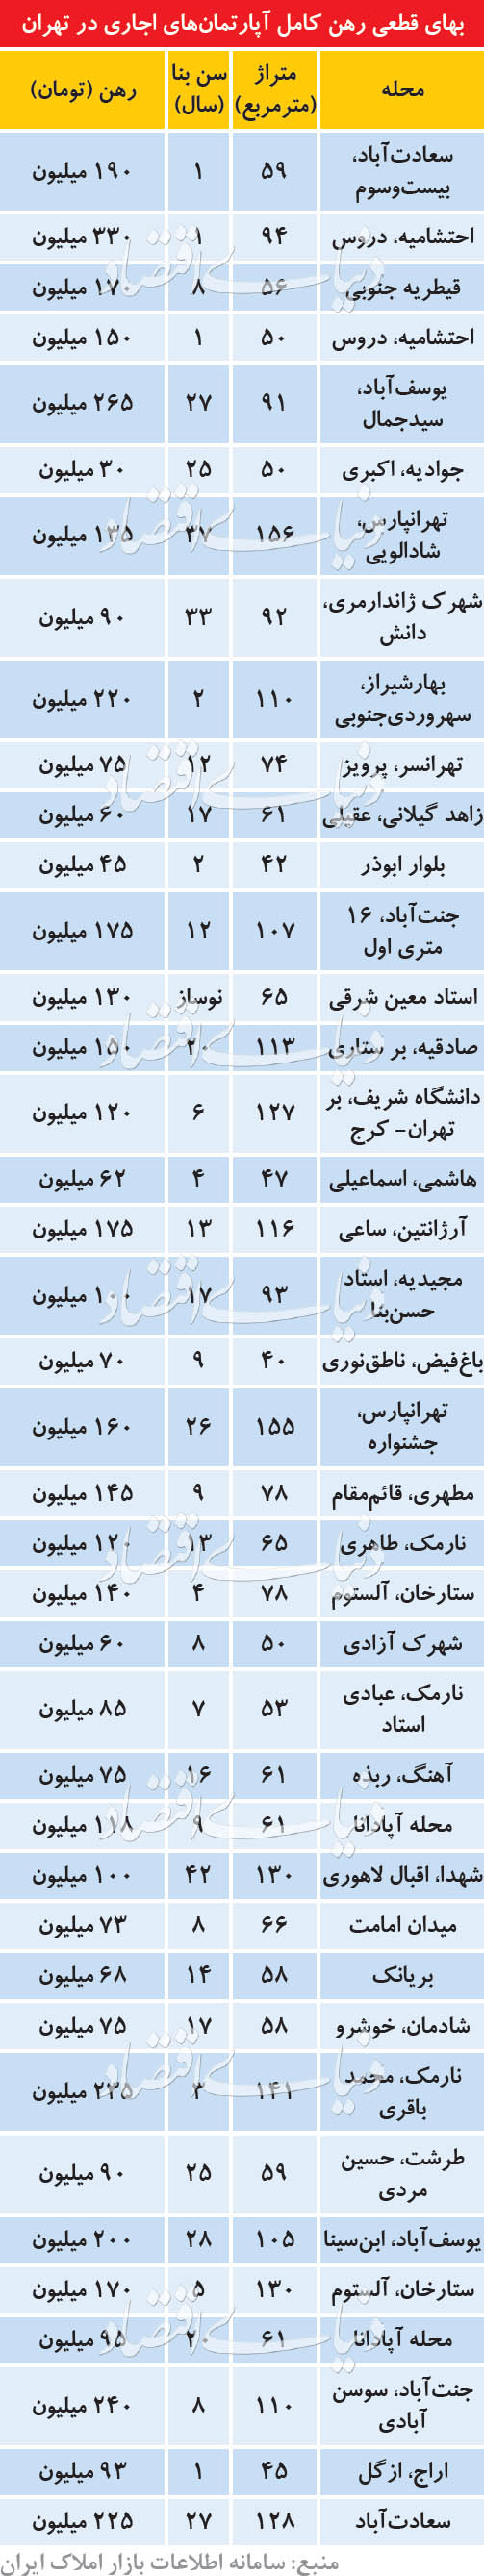 قیمت رهن کامل در تهران چند؟/ فایل‌های عرضه شده به‌صورت رهن کامل درحال ازدیاد است